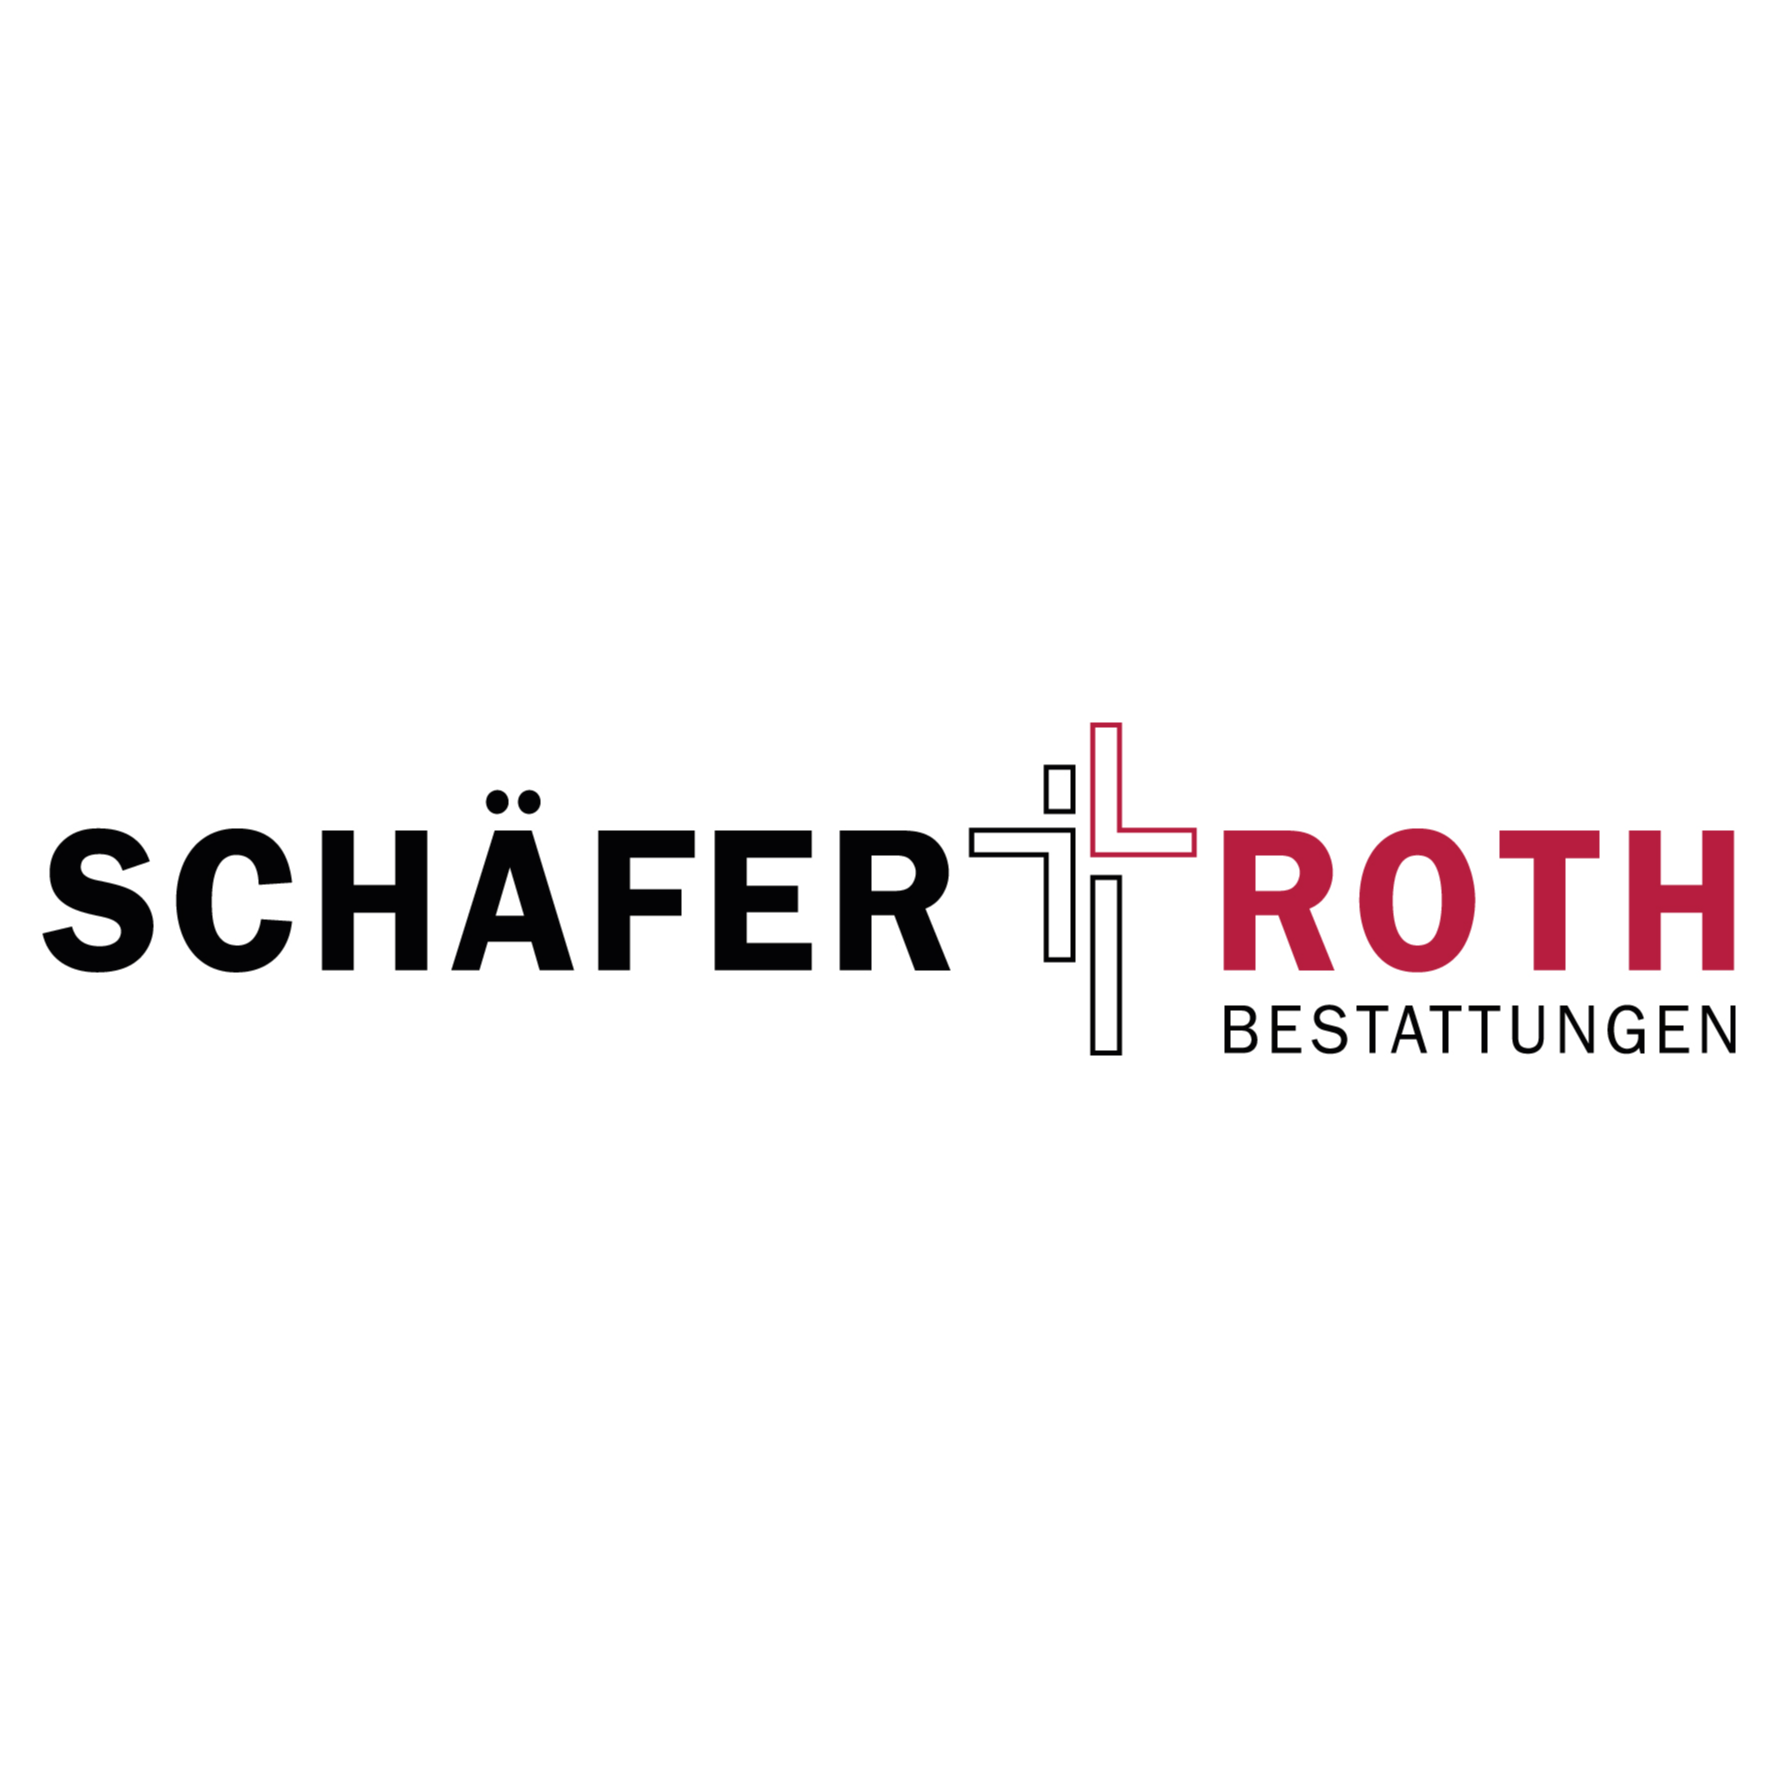 Schäfer & Roth Bestattungen Logo